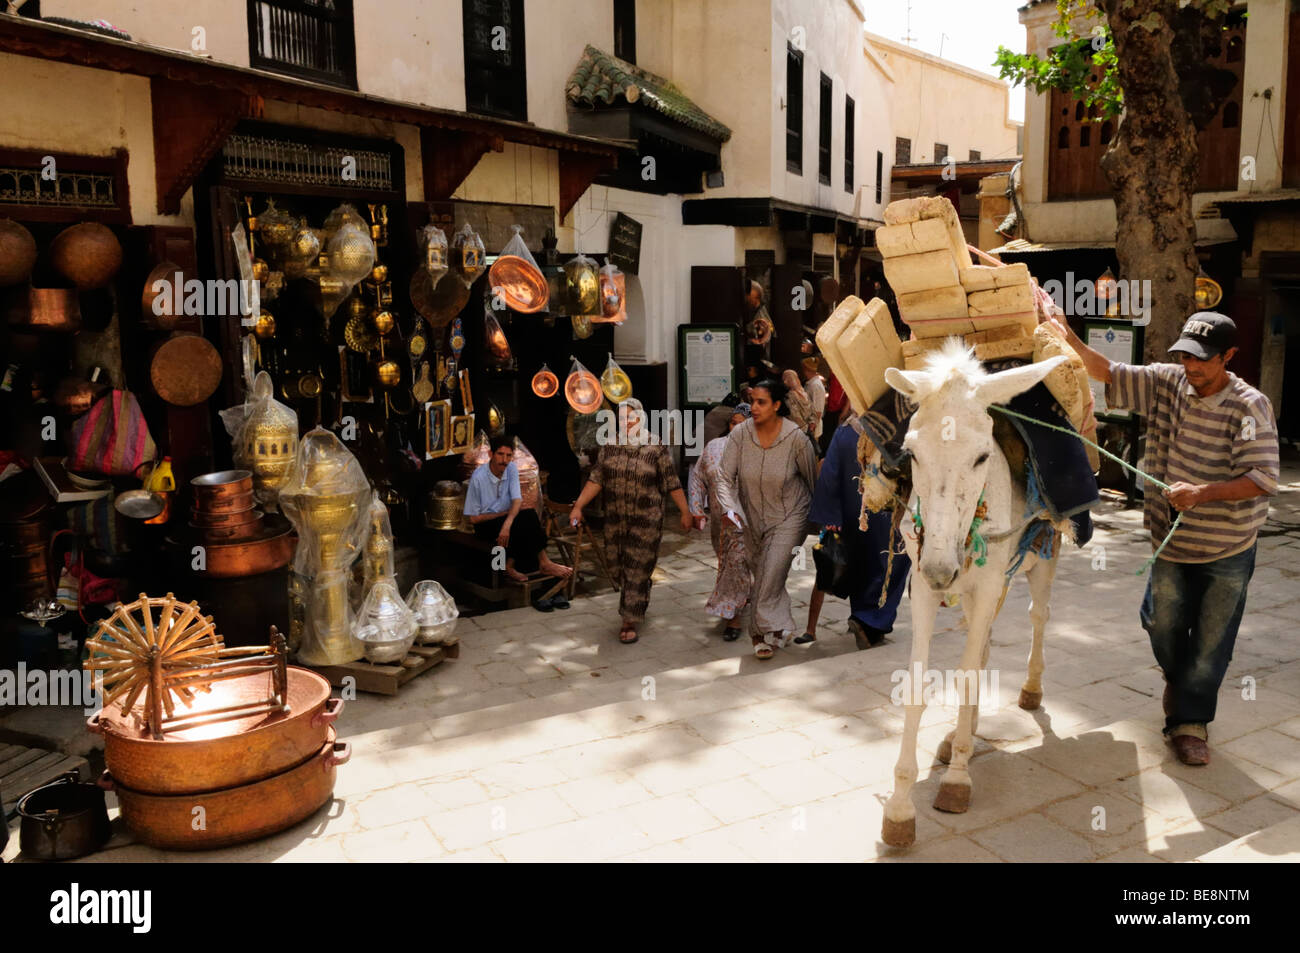 Maroc, Fes ; Place comme Brassmakers Seffarine, le Souq ; Scène de rue à cheval transportant des planches de bois Banque D'Images